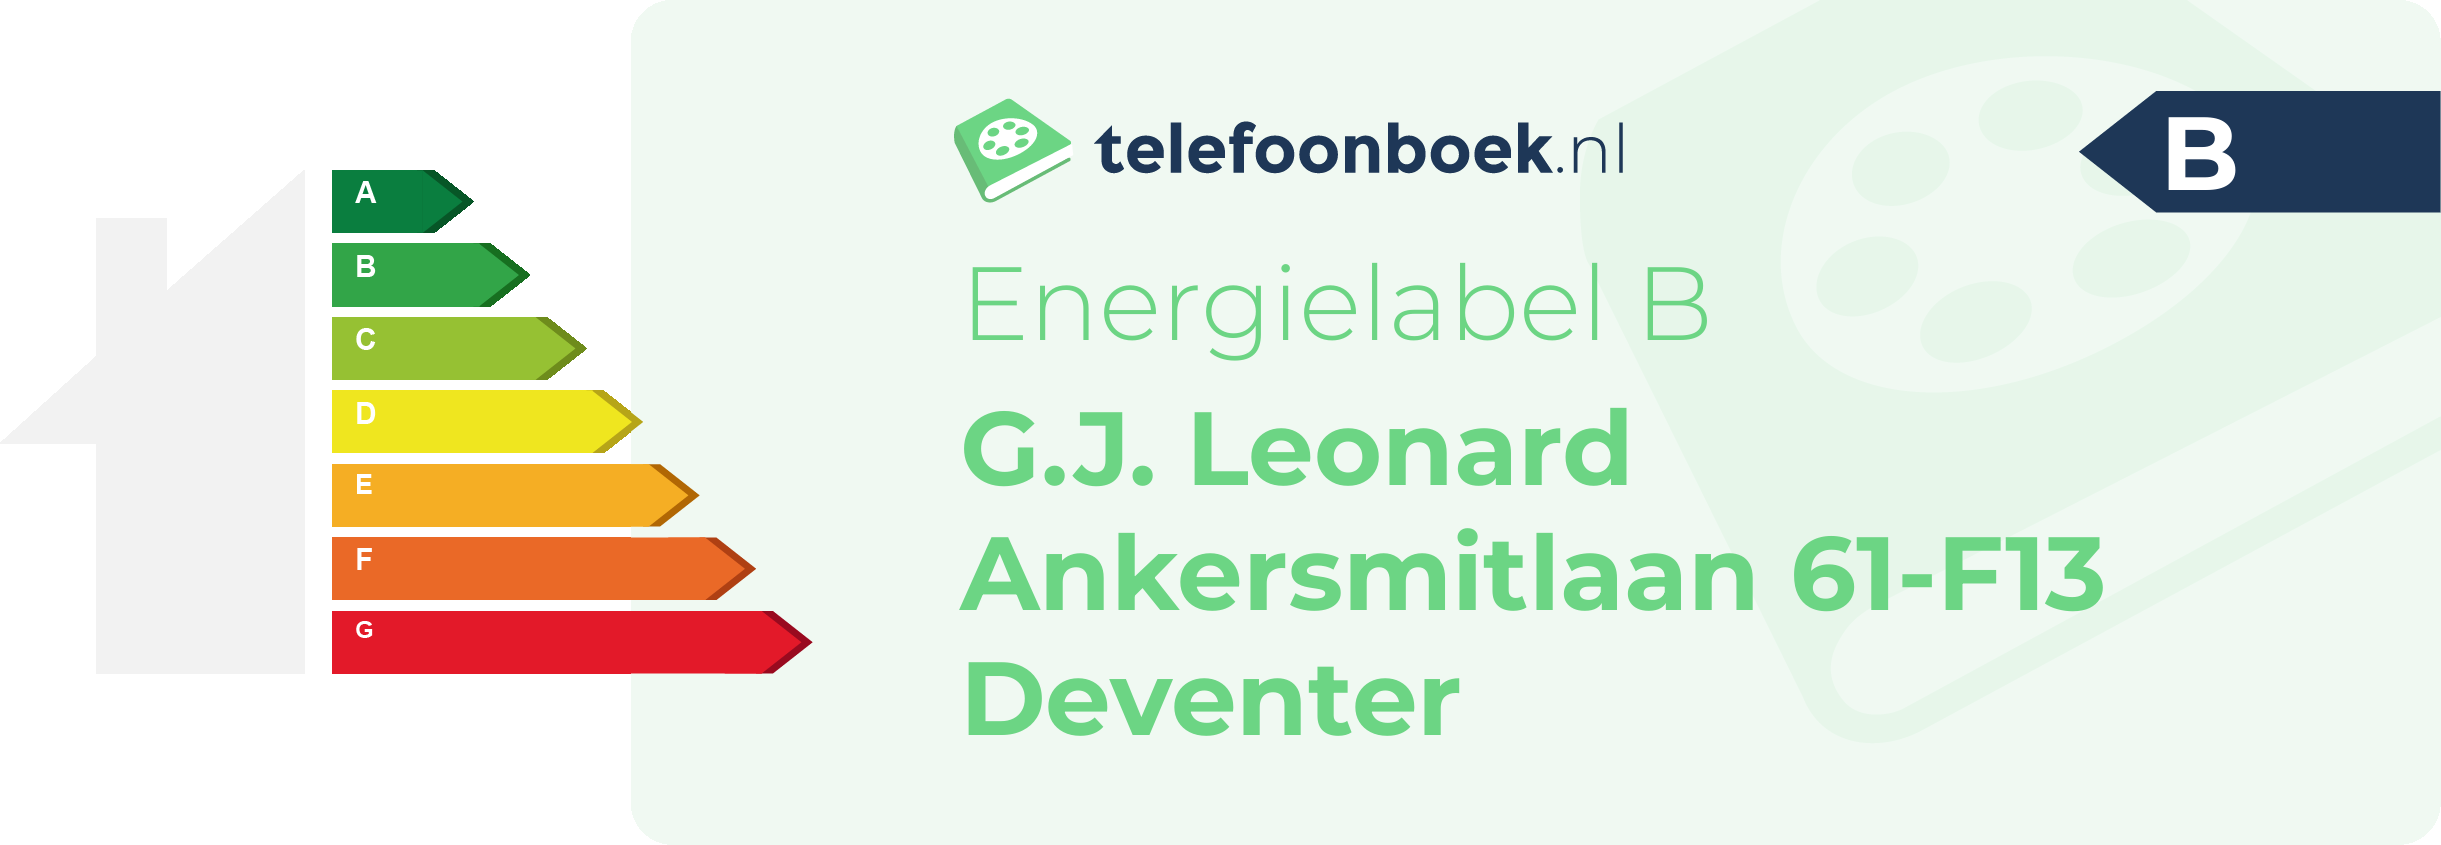 Energielabel G.J. Leonard Ankersmitlaan 61-F13 Deventer